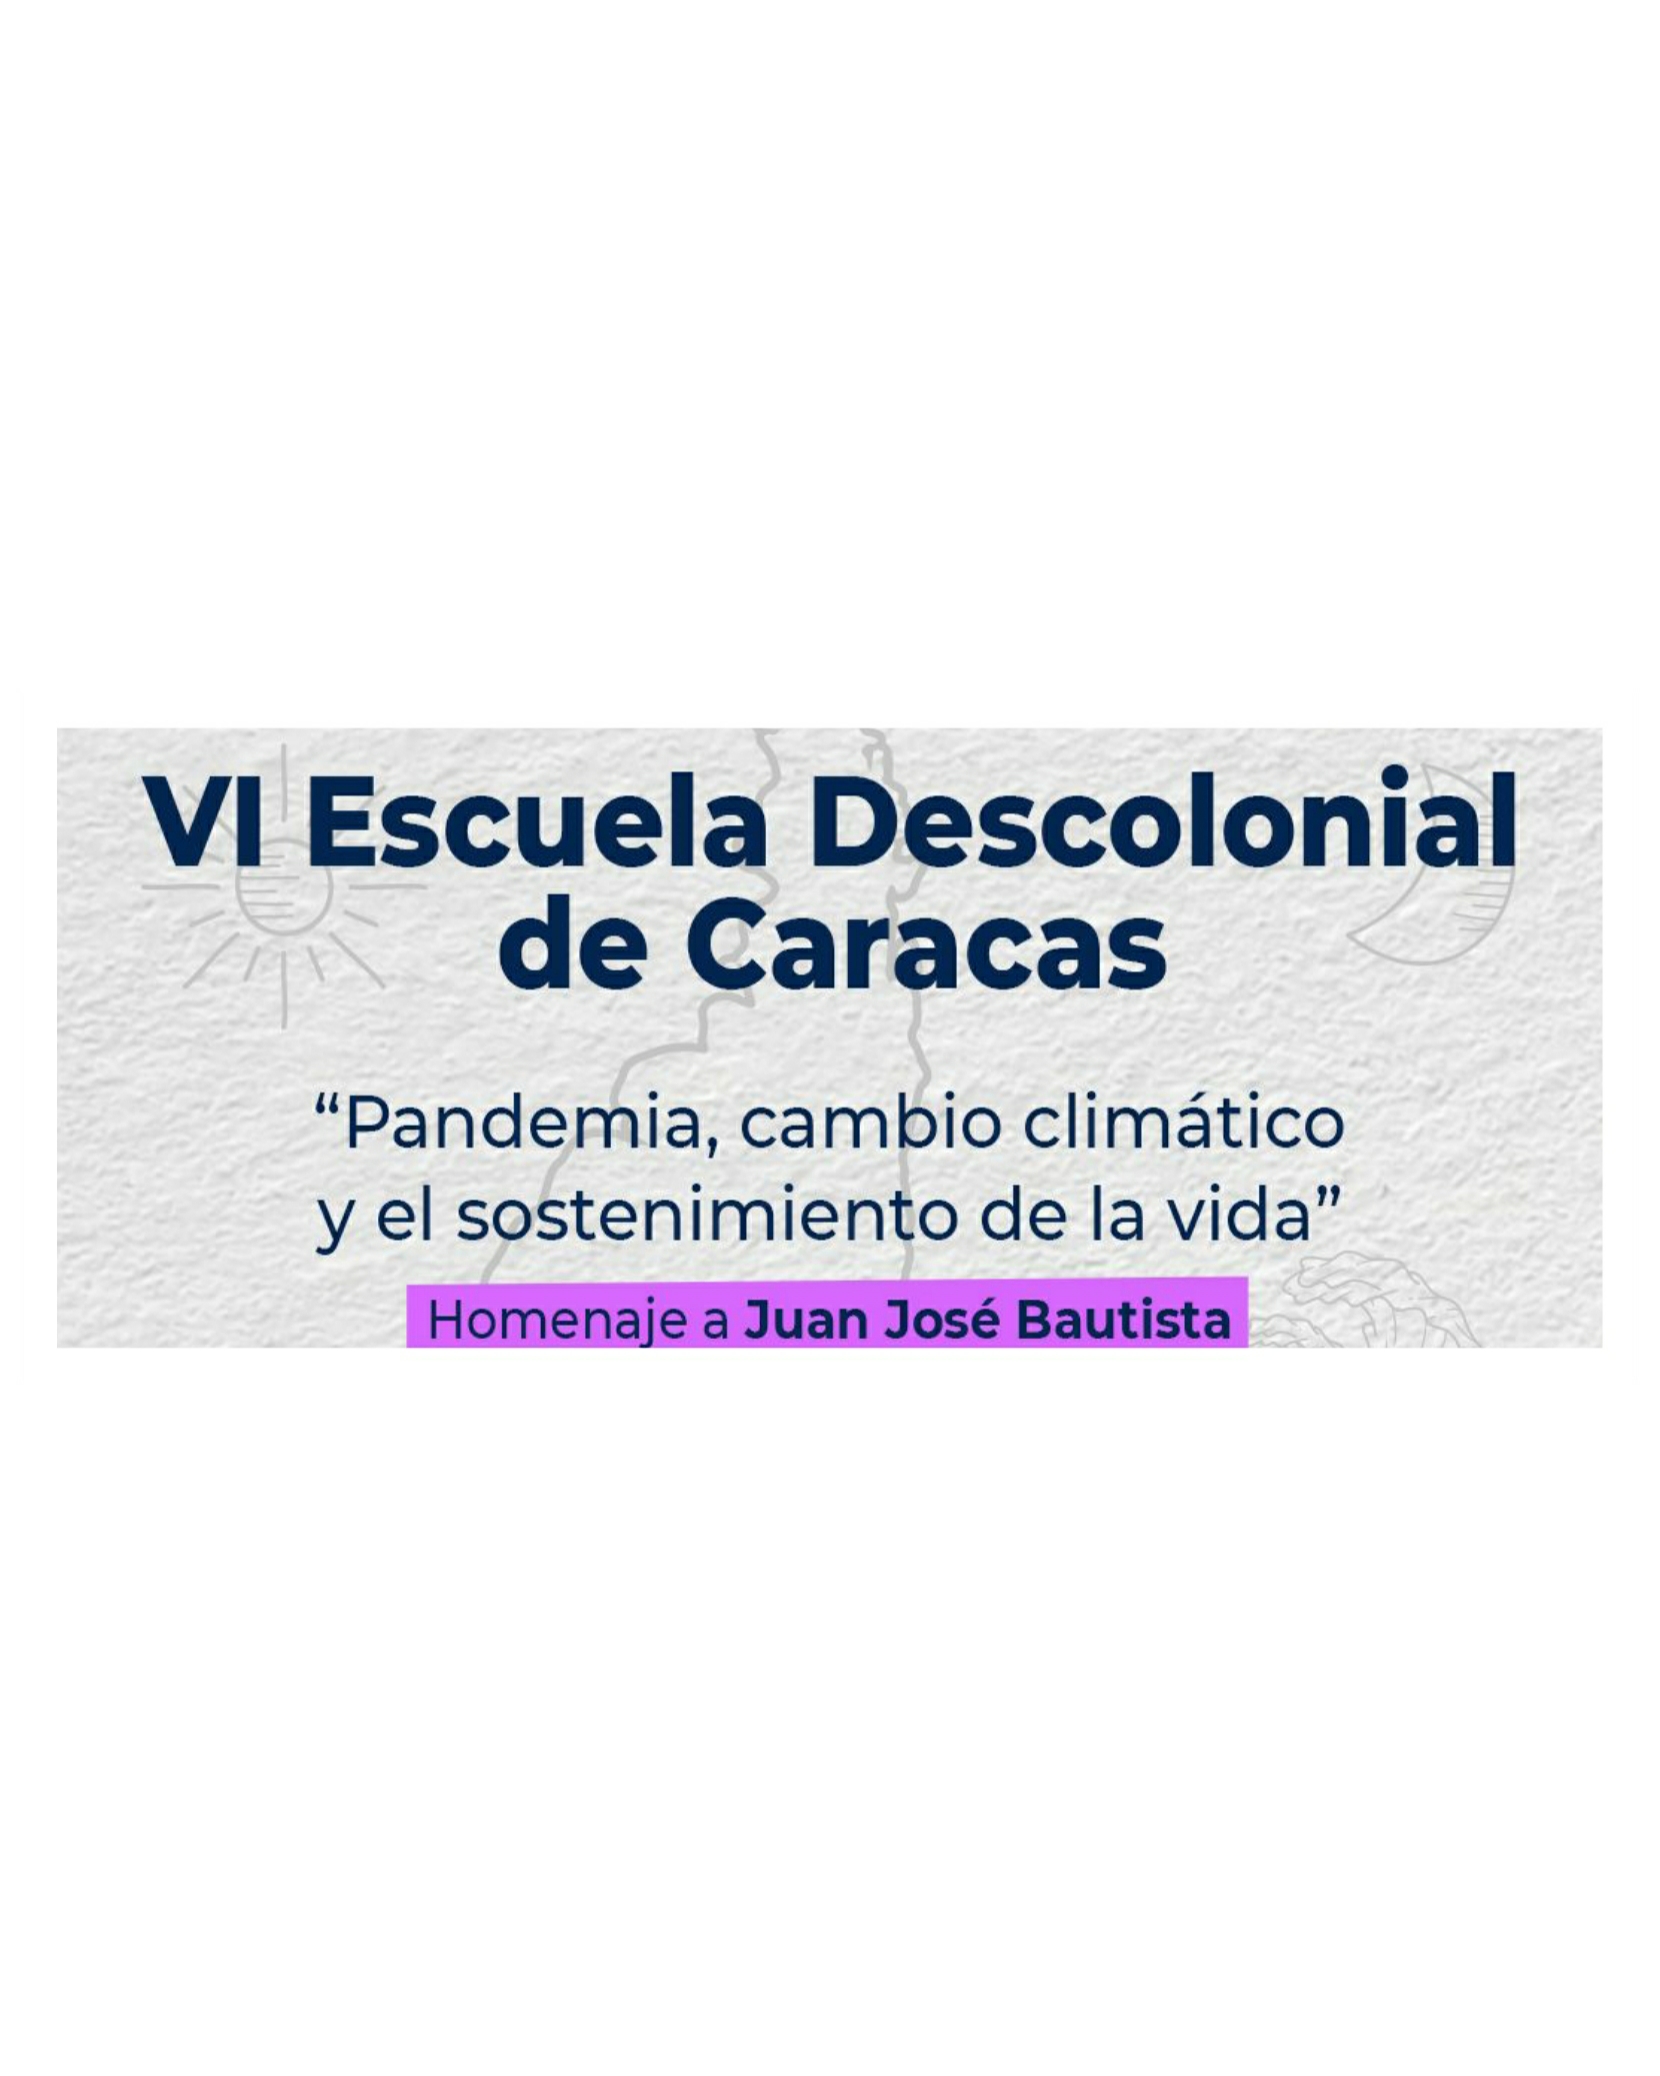 Escuela Descolonial de Caracas debatirá sobre “Pandemia, Cambio Climático y el Sostenimiento de la Vida”